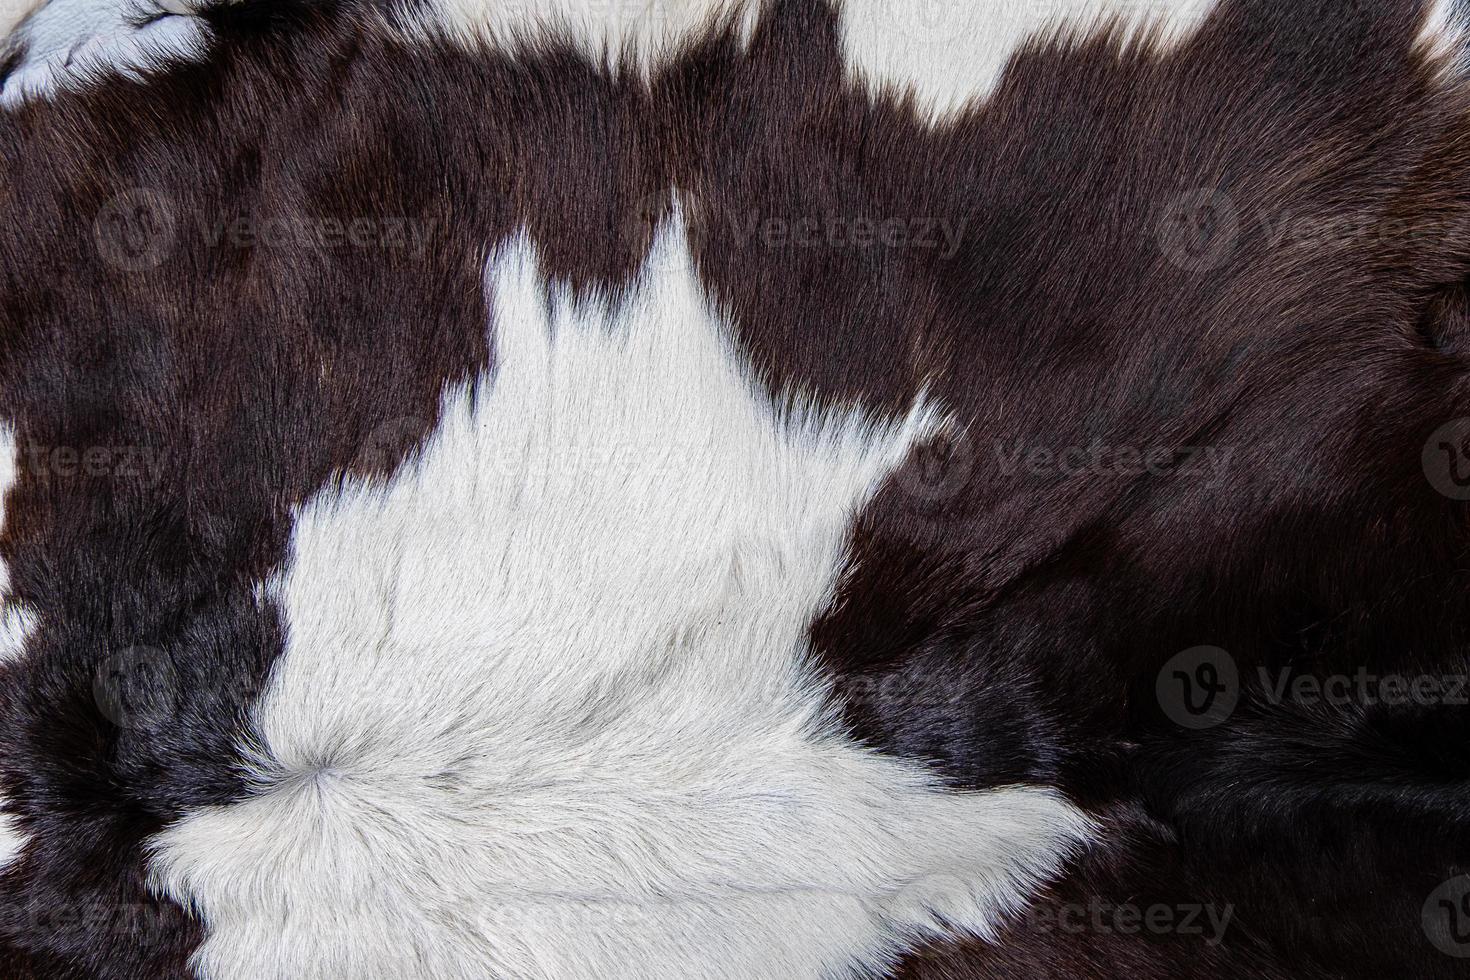 brun kohudrock med päls svartvita och bruna fläckar foto